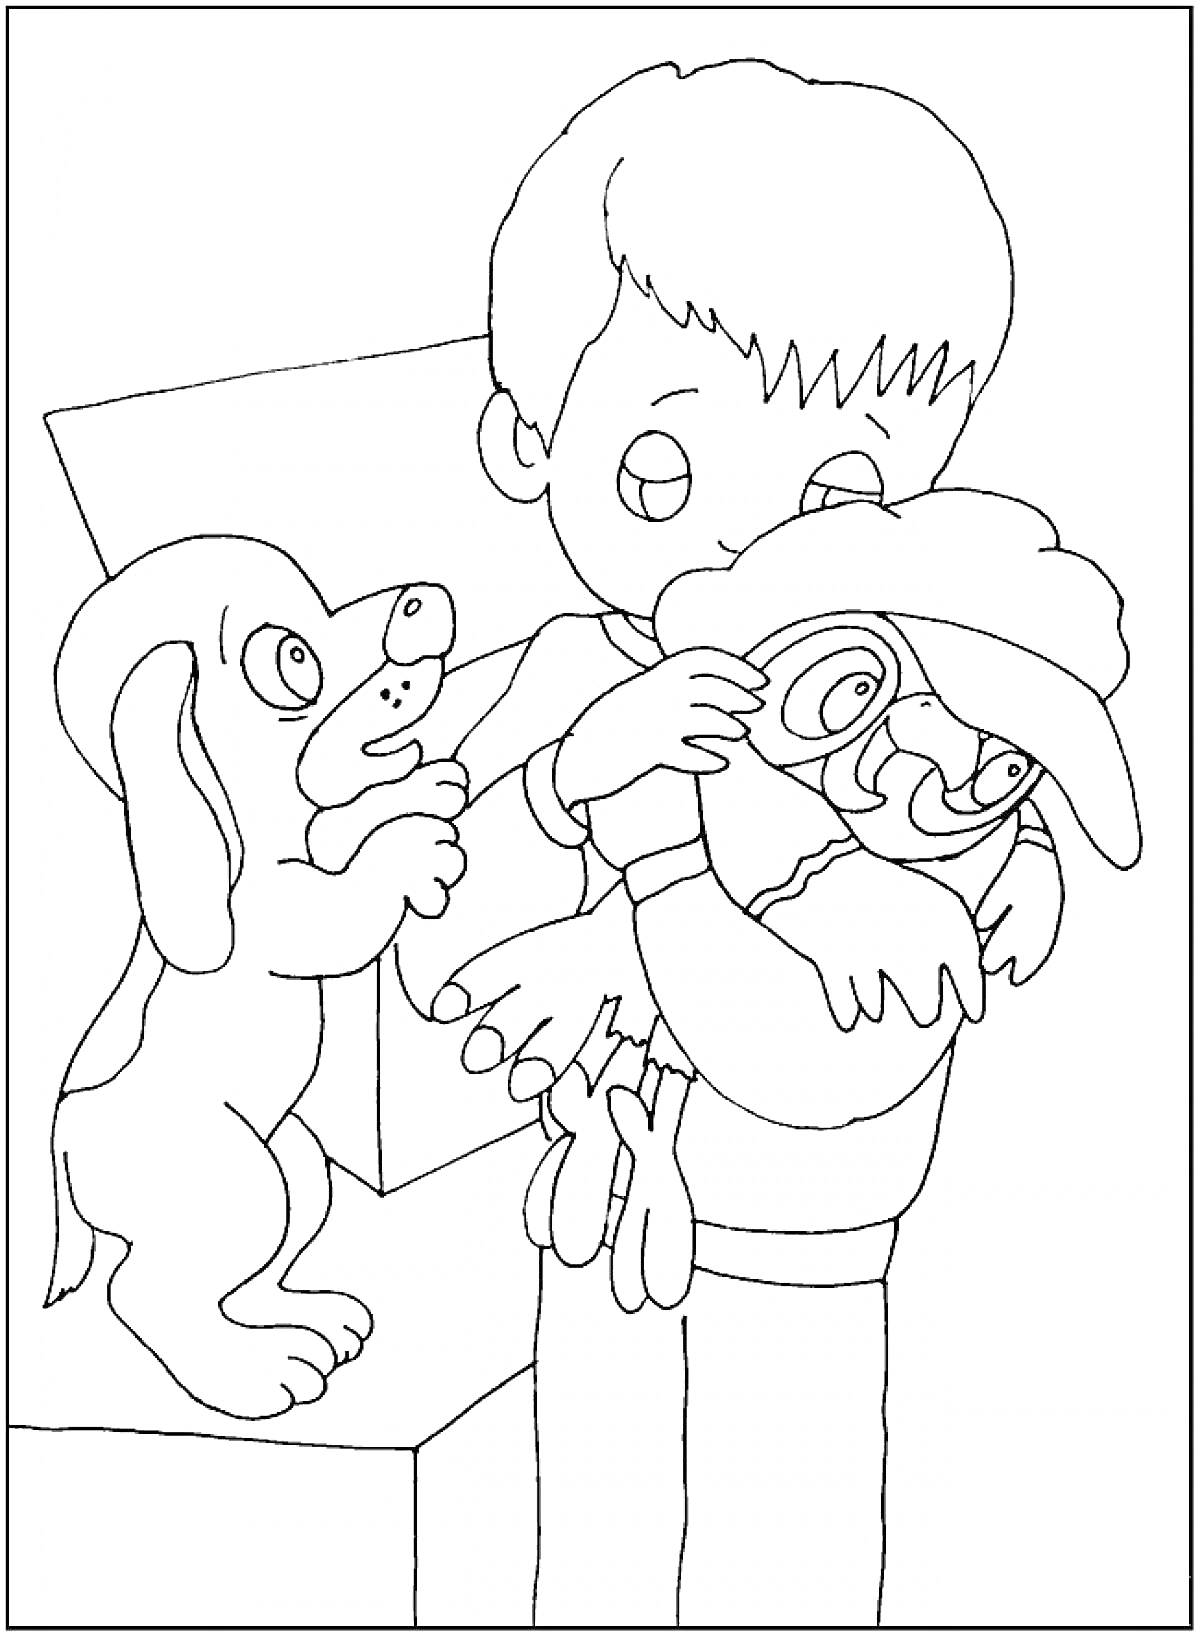 Раскраска Мальчик обнимает попугая Кешу, рядом стоит испуганная собака